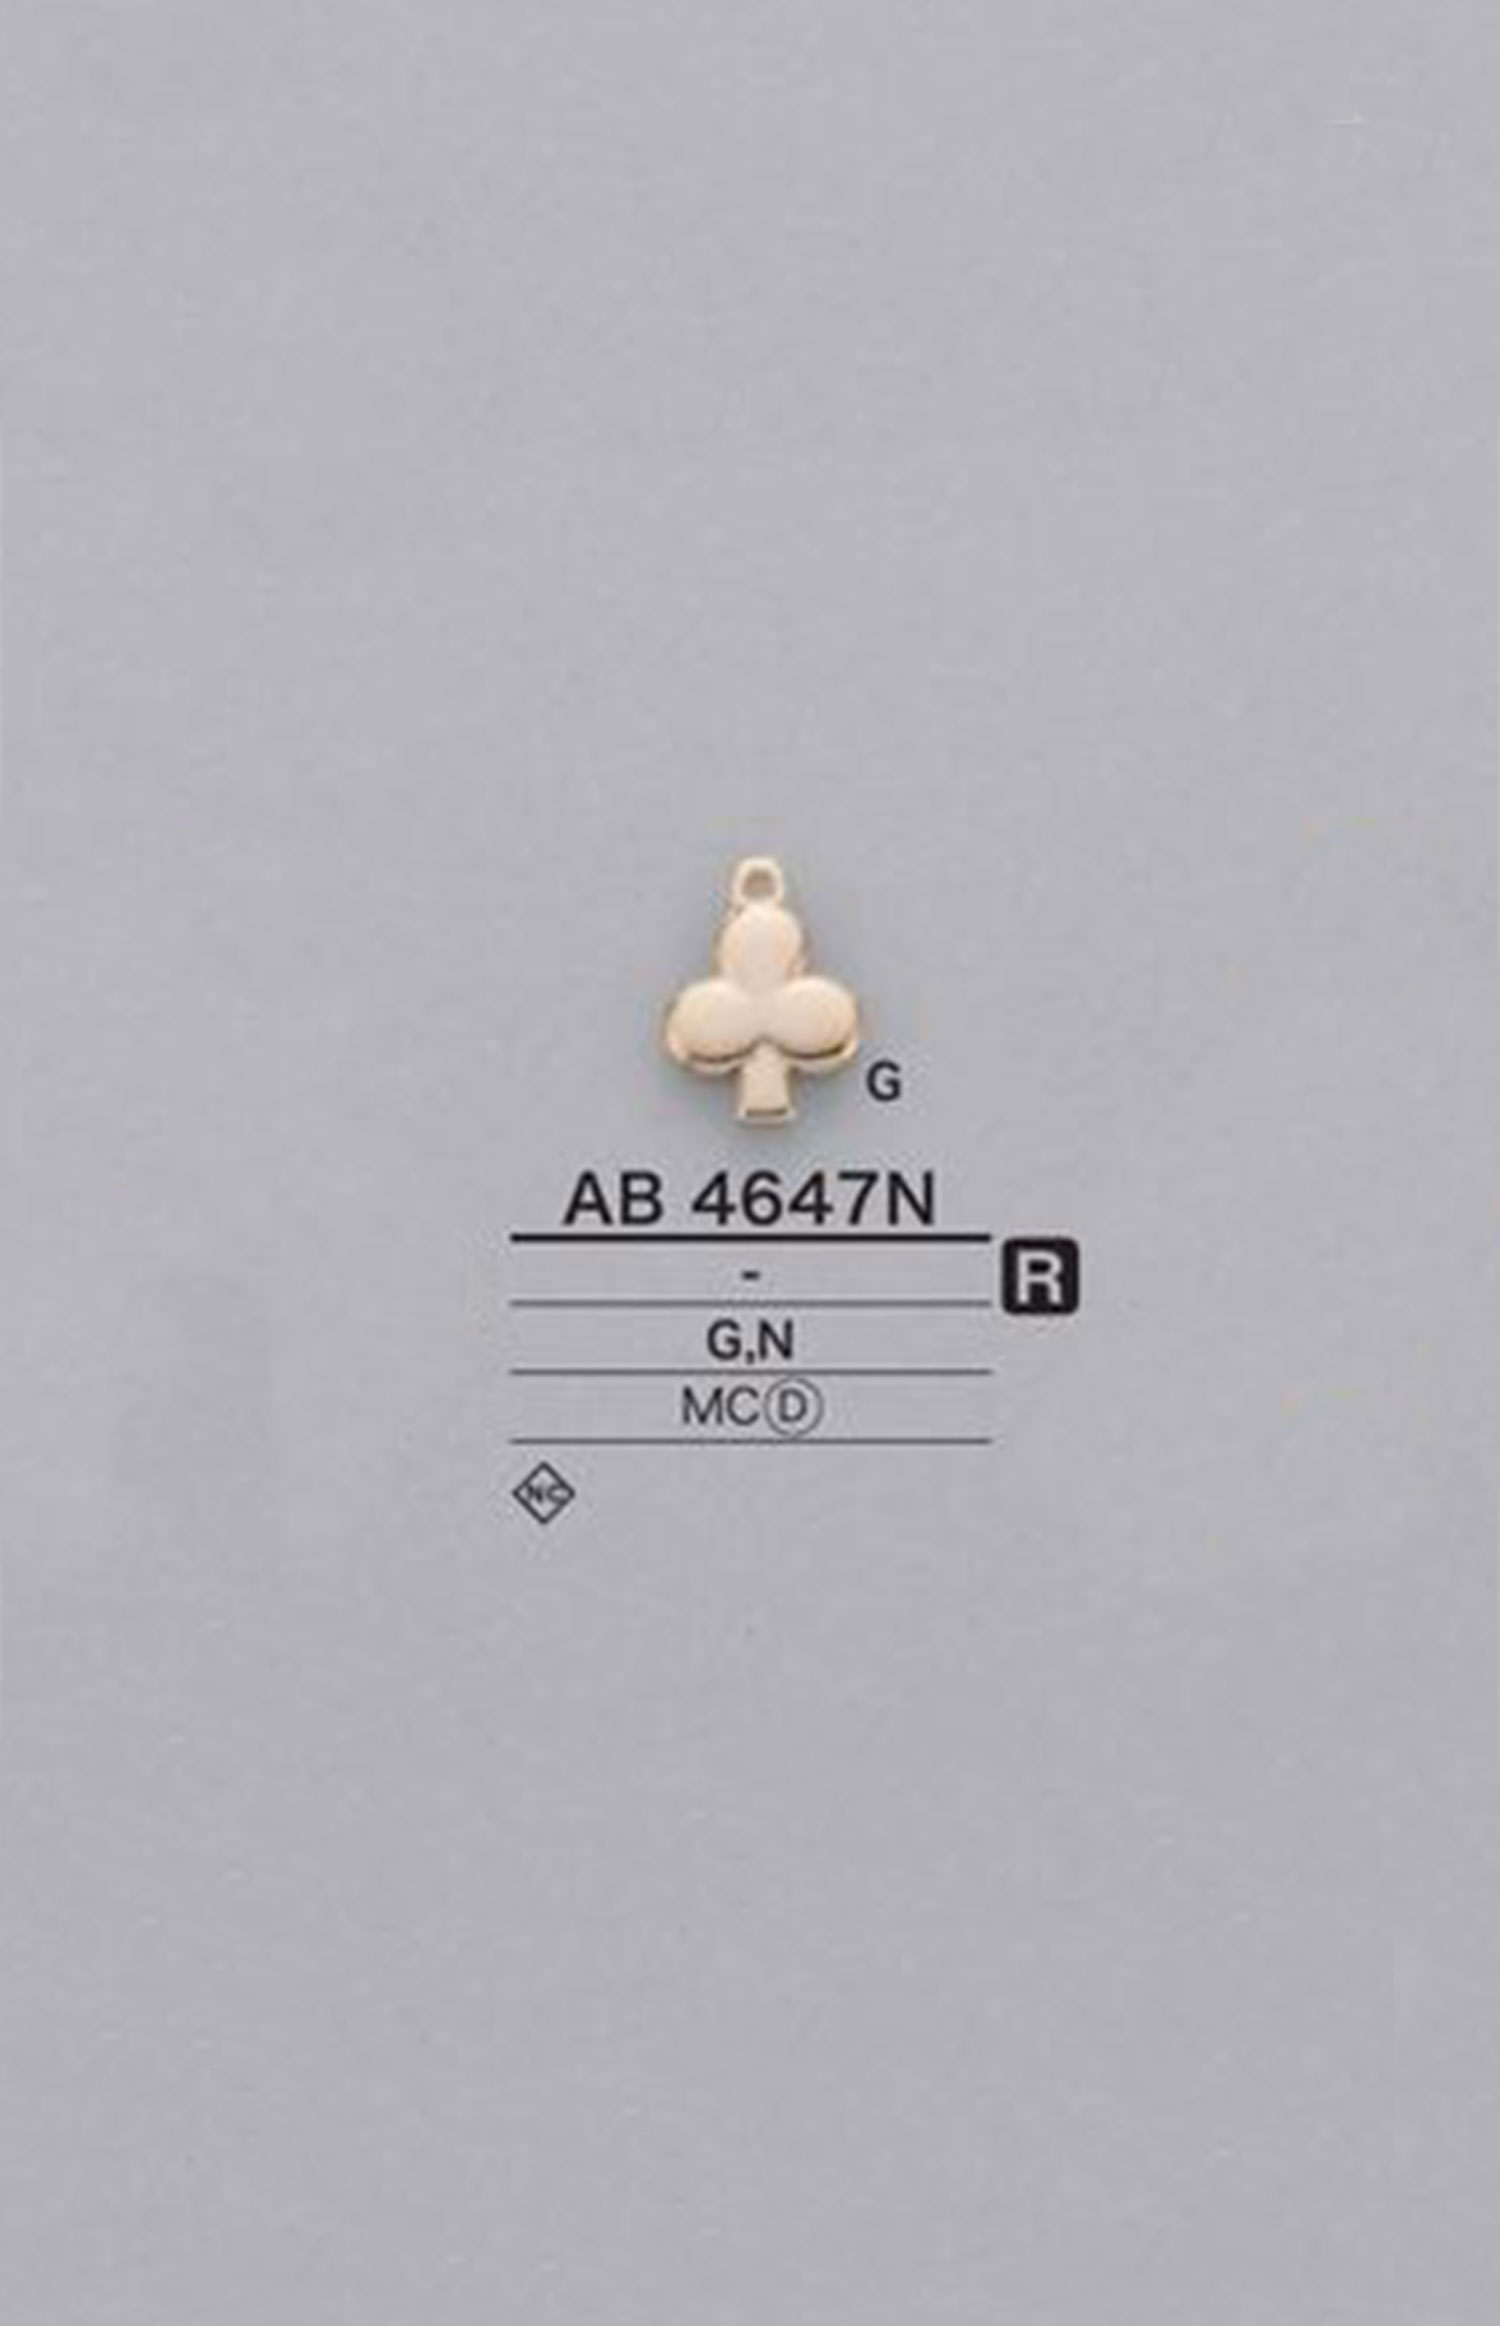 AB4647N 俱乐部型图形元素零件[杂货等] 爱丽丝纽扣